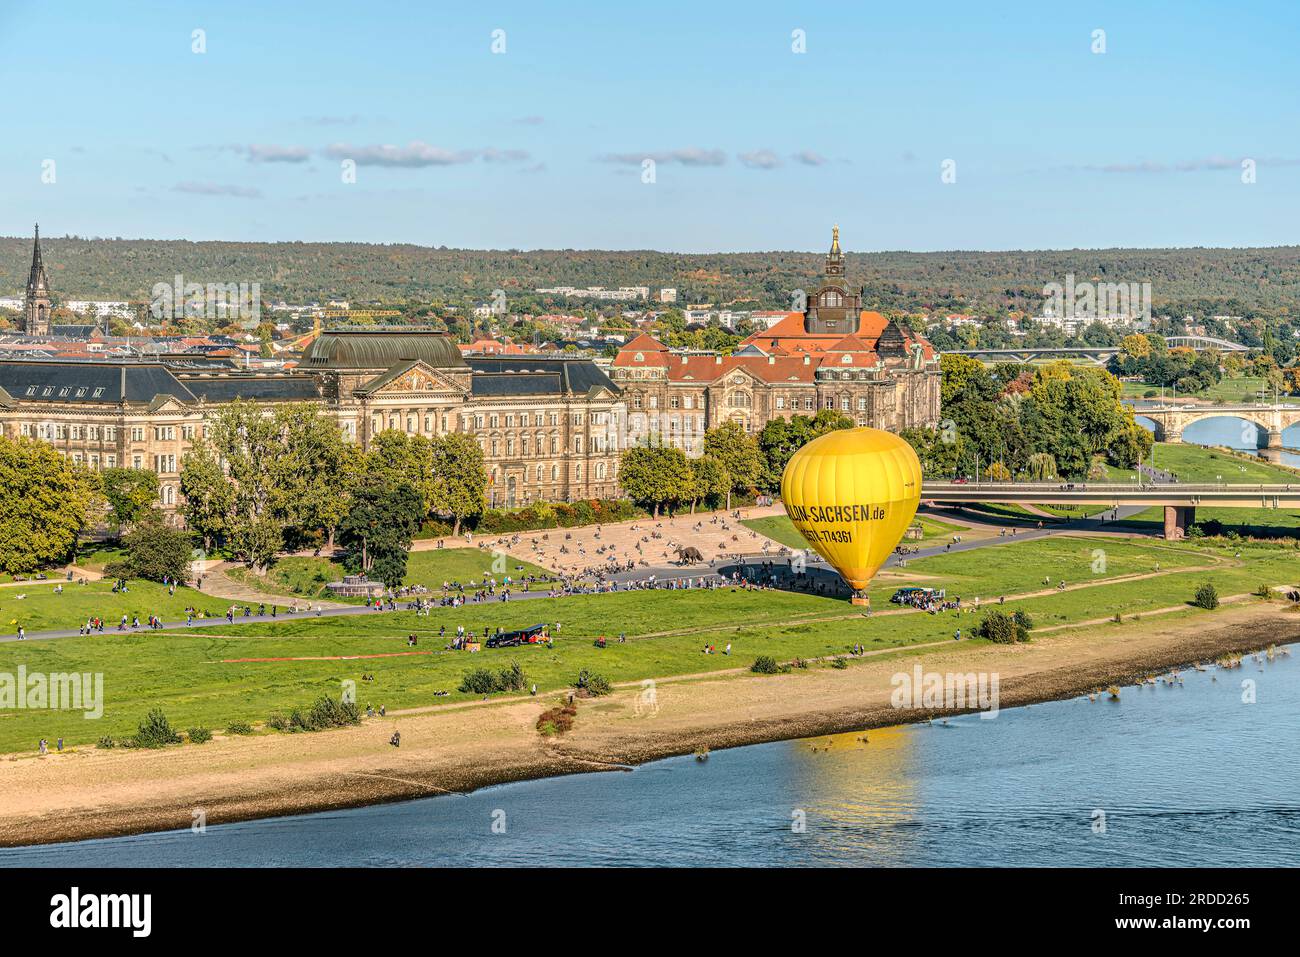 Der Heißluftballon startet am Ufer der elbe in Dresden, Sachsen Stockfoto